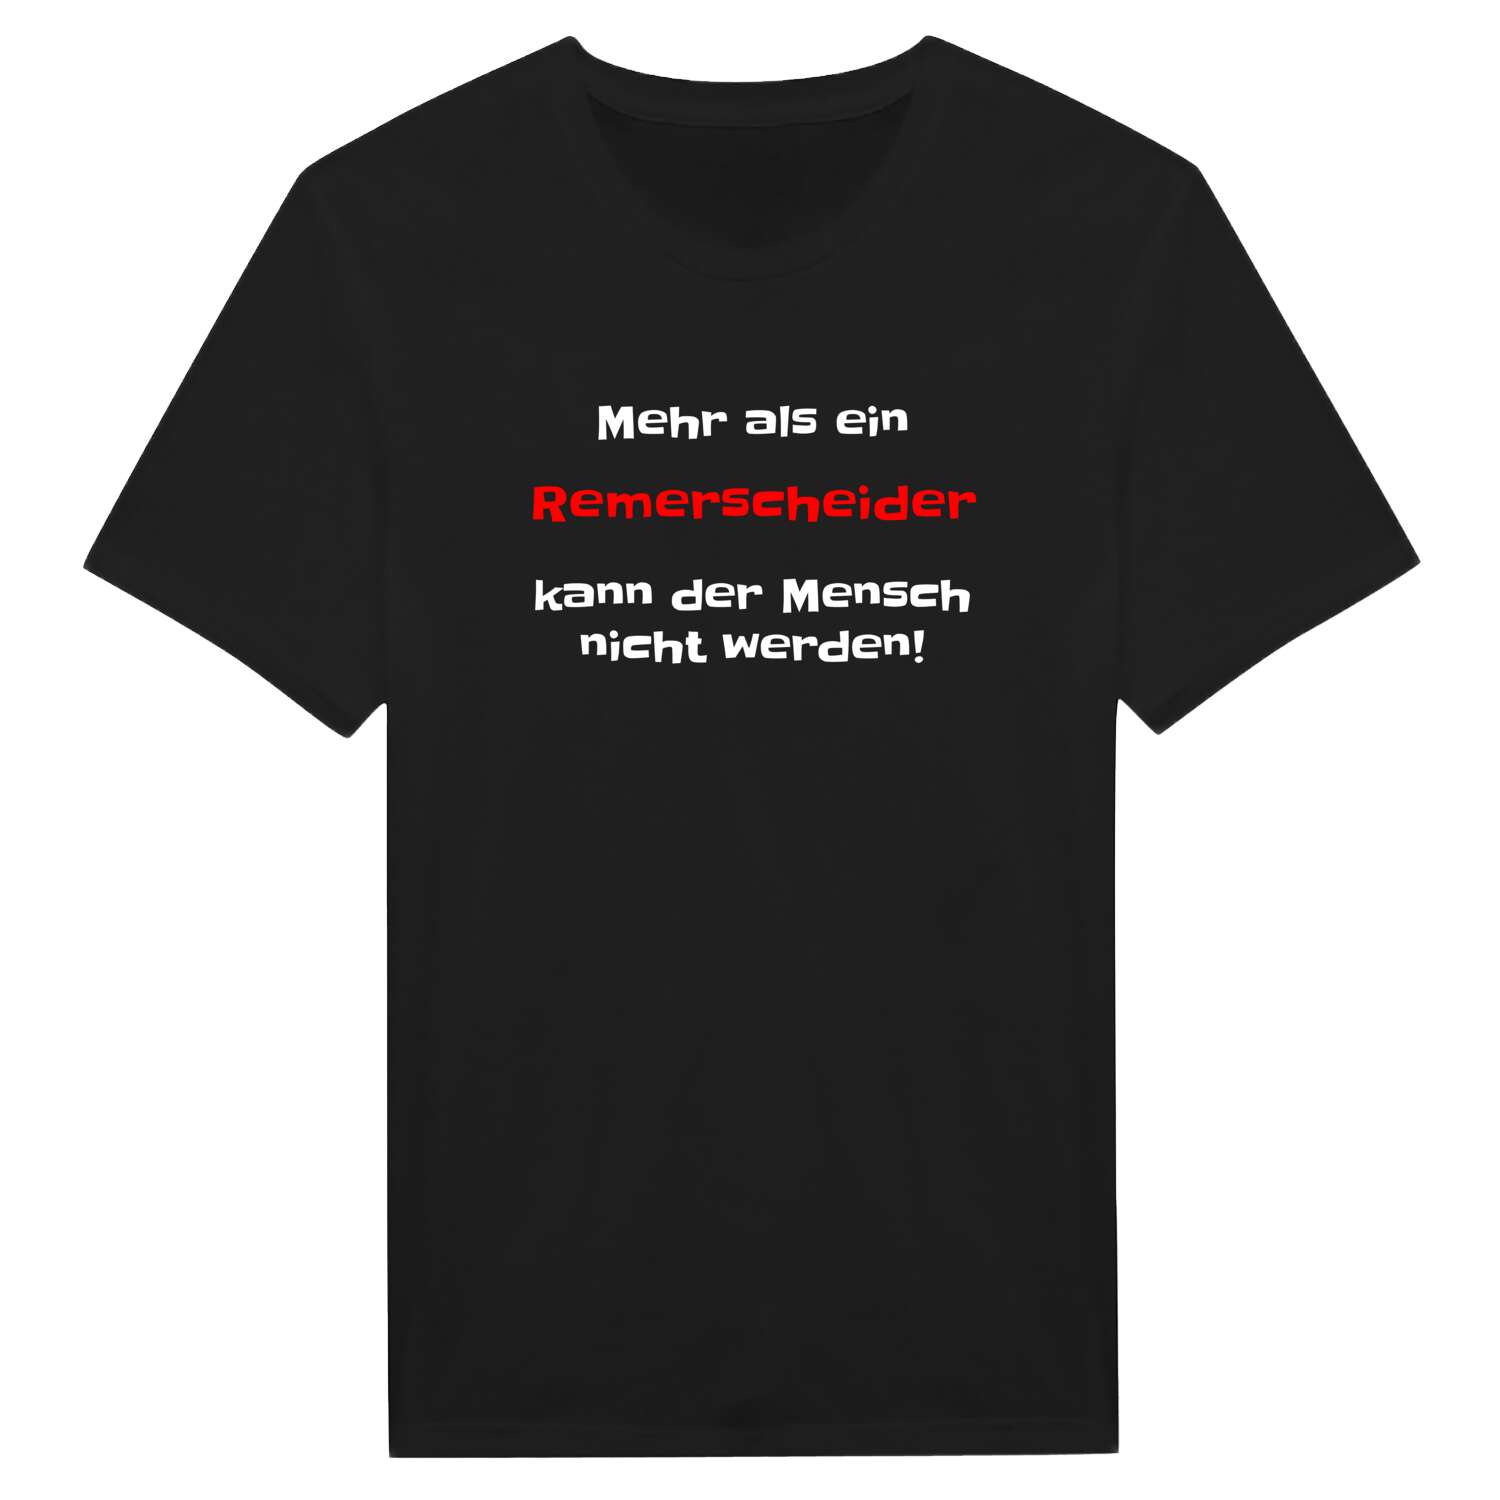 Remerscheid T-Shirt »Mehr als ein«